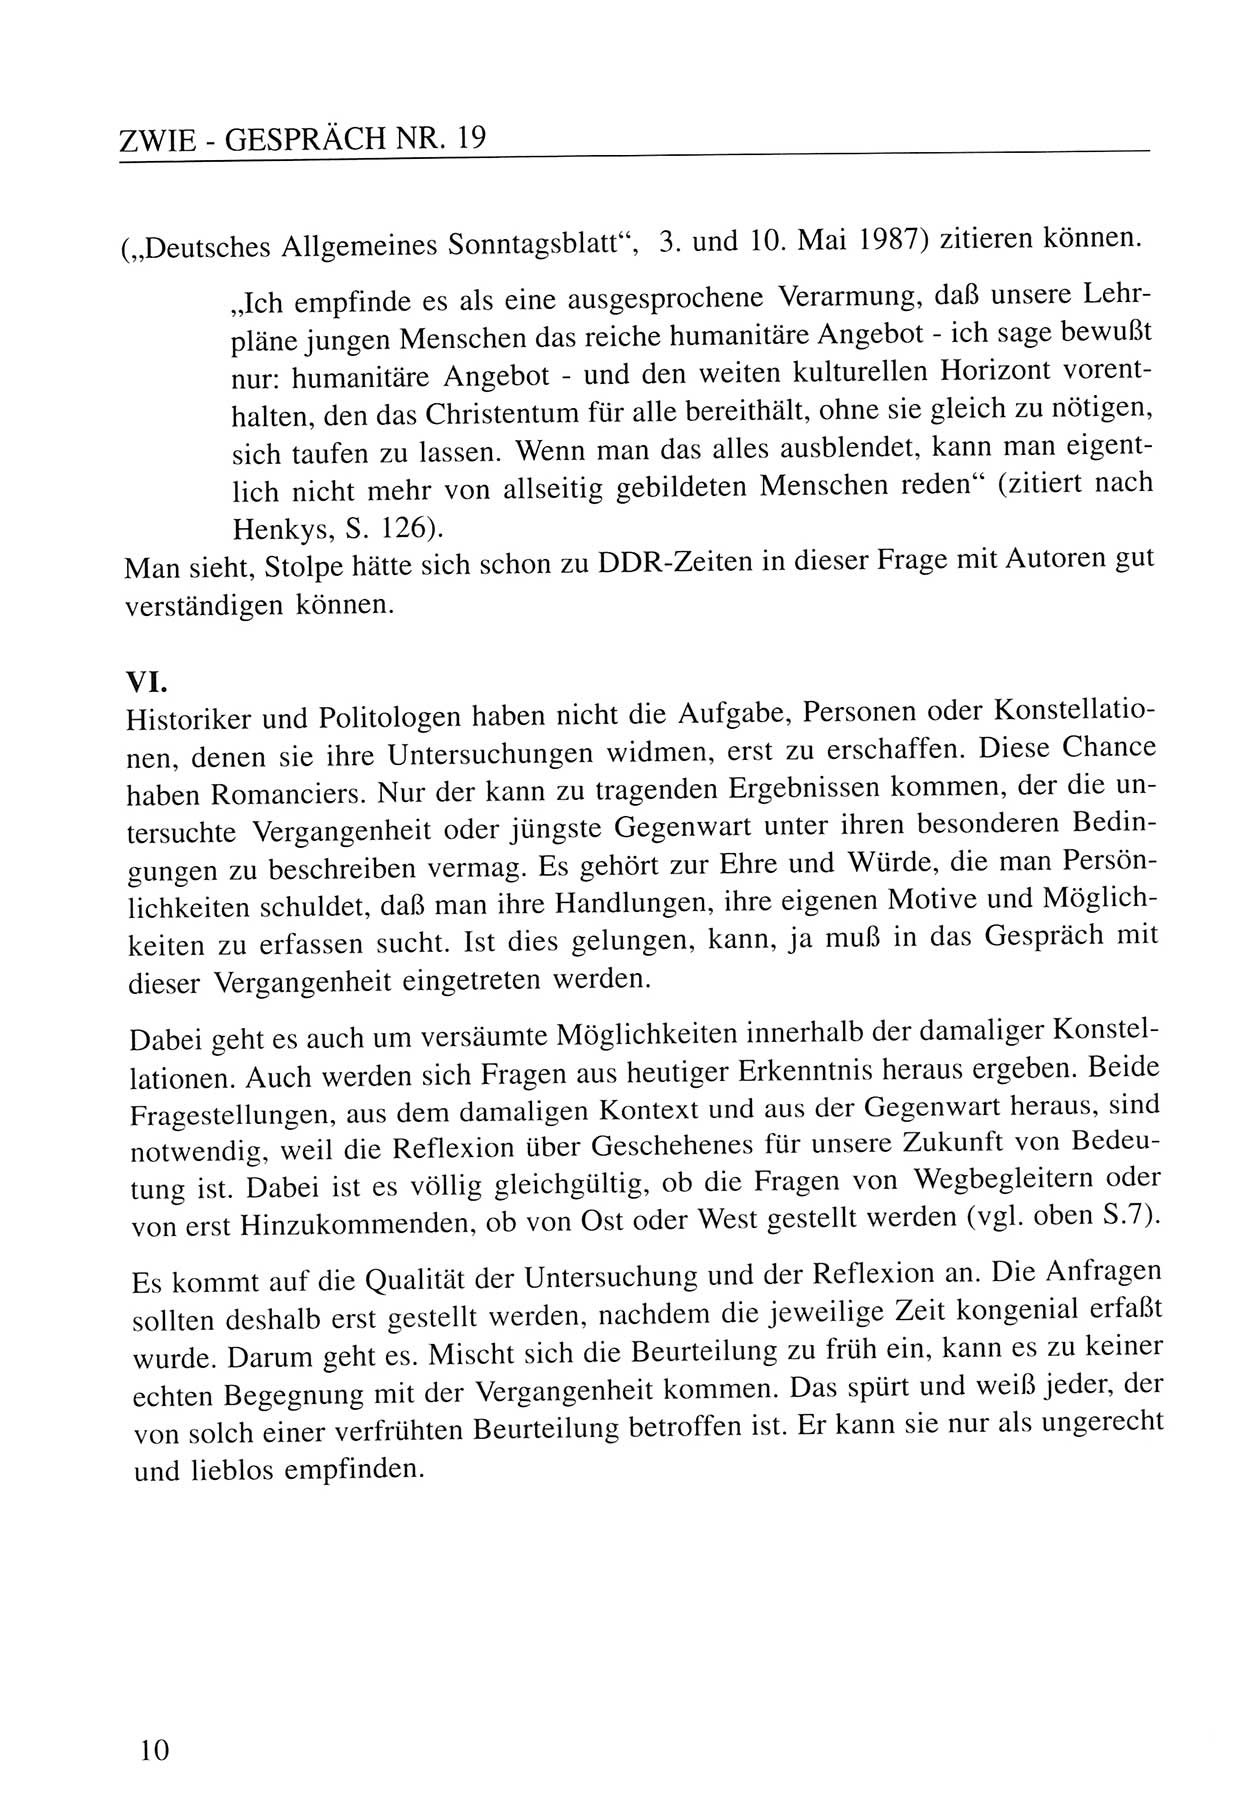 Zwie-Gespräch, Beiträge zum Umgang mit der Staatssicherheits-Vergangenheit [Deutsche Demokratische Republik (DDR)], Ausgabe Nr. 19, Berlin 1994, Seite 10 (Zwie-Gespr. Ausg. 19 1994, S. 10)